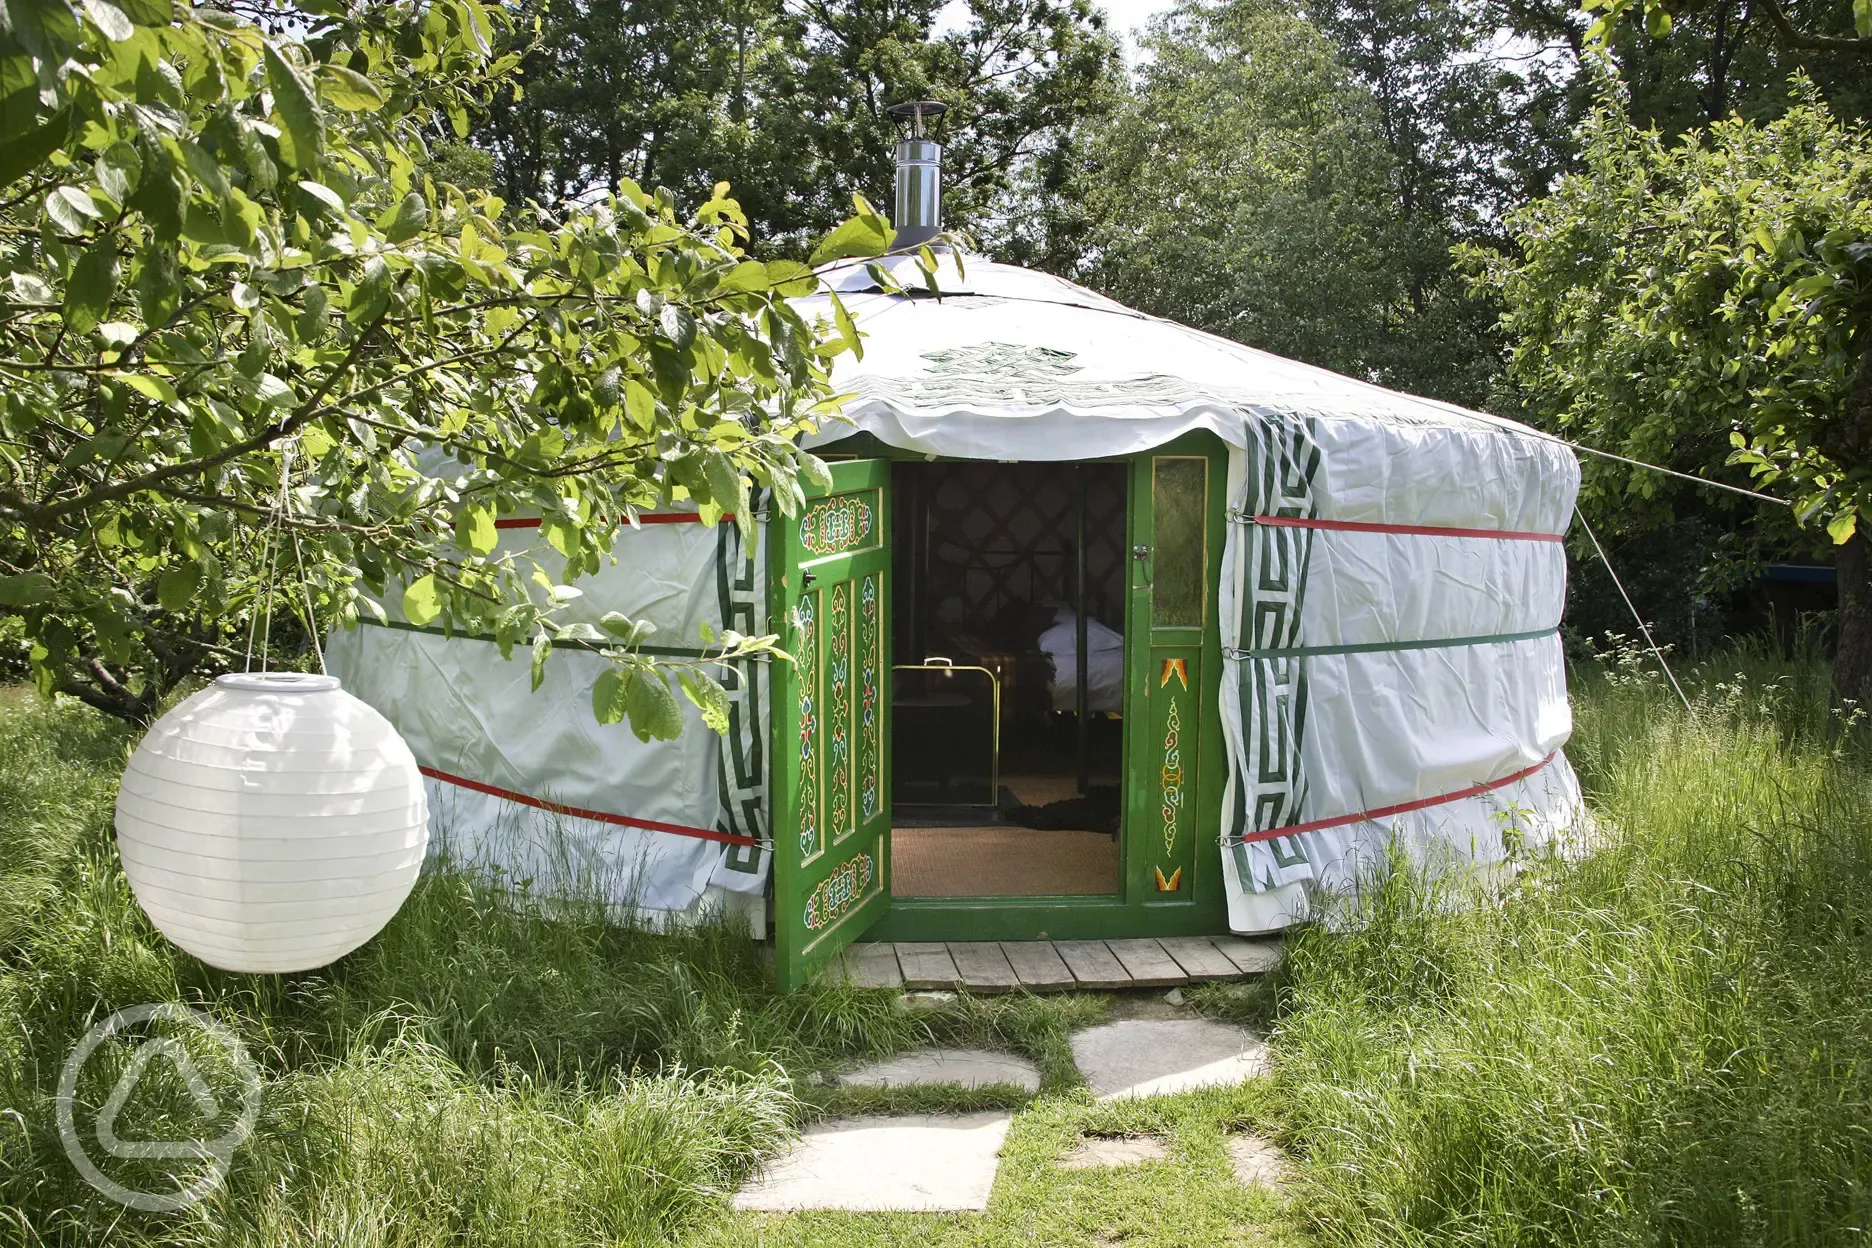 Small yurt